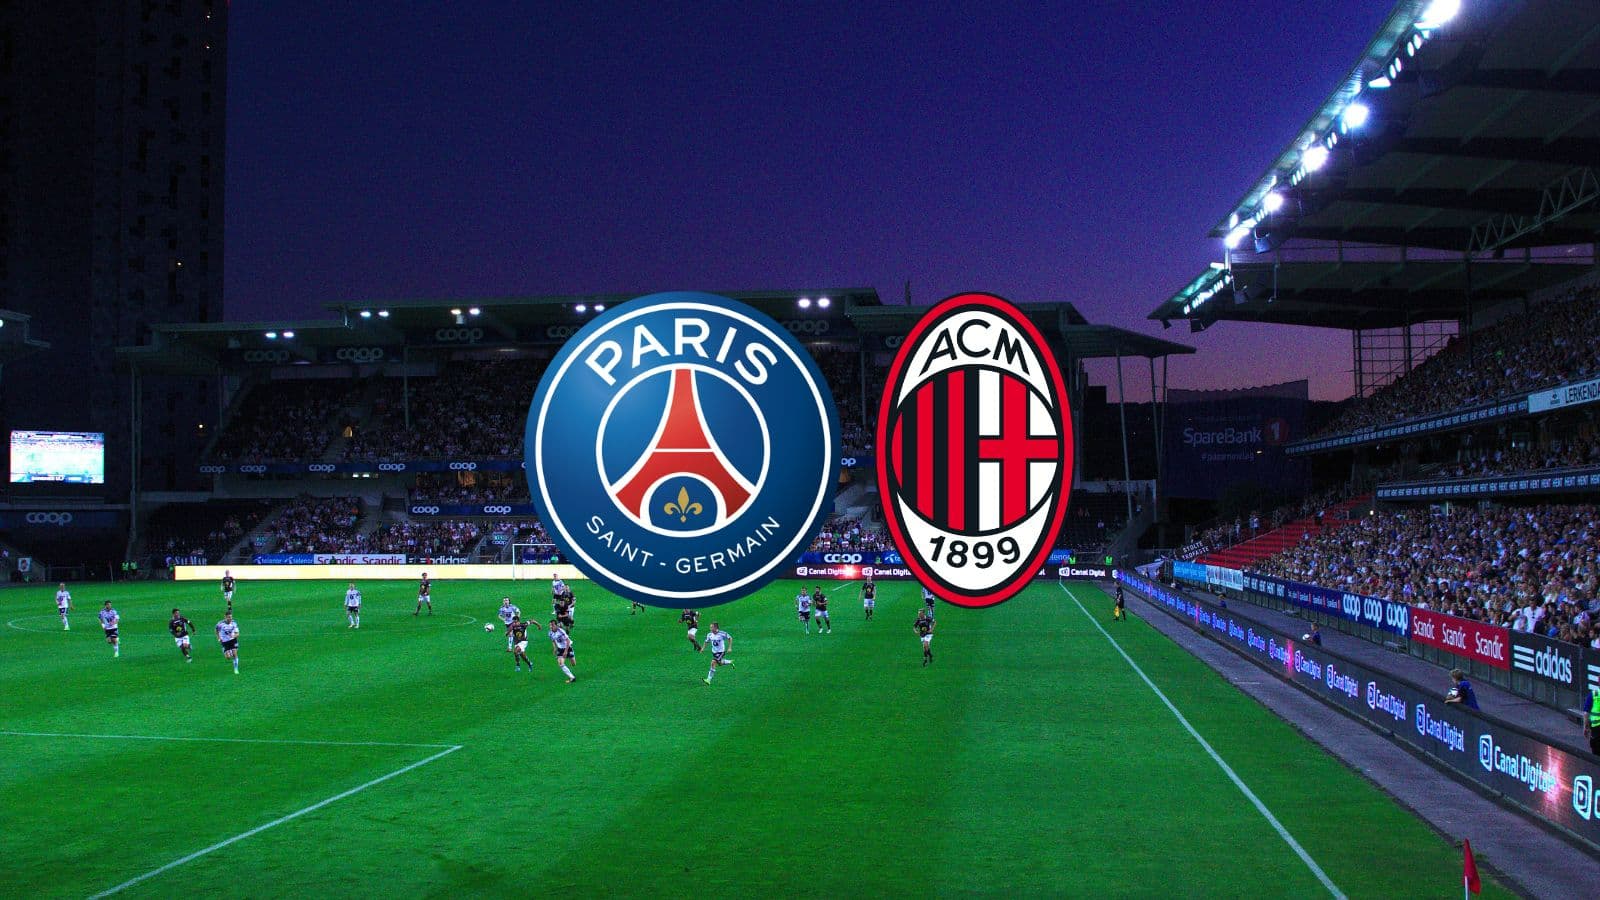 Match : PSG/Milan AC, horaire, chaîne TV, commentateurs et rediffusion